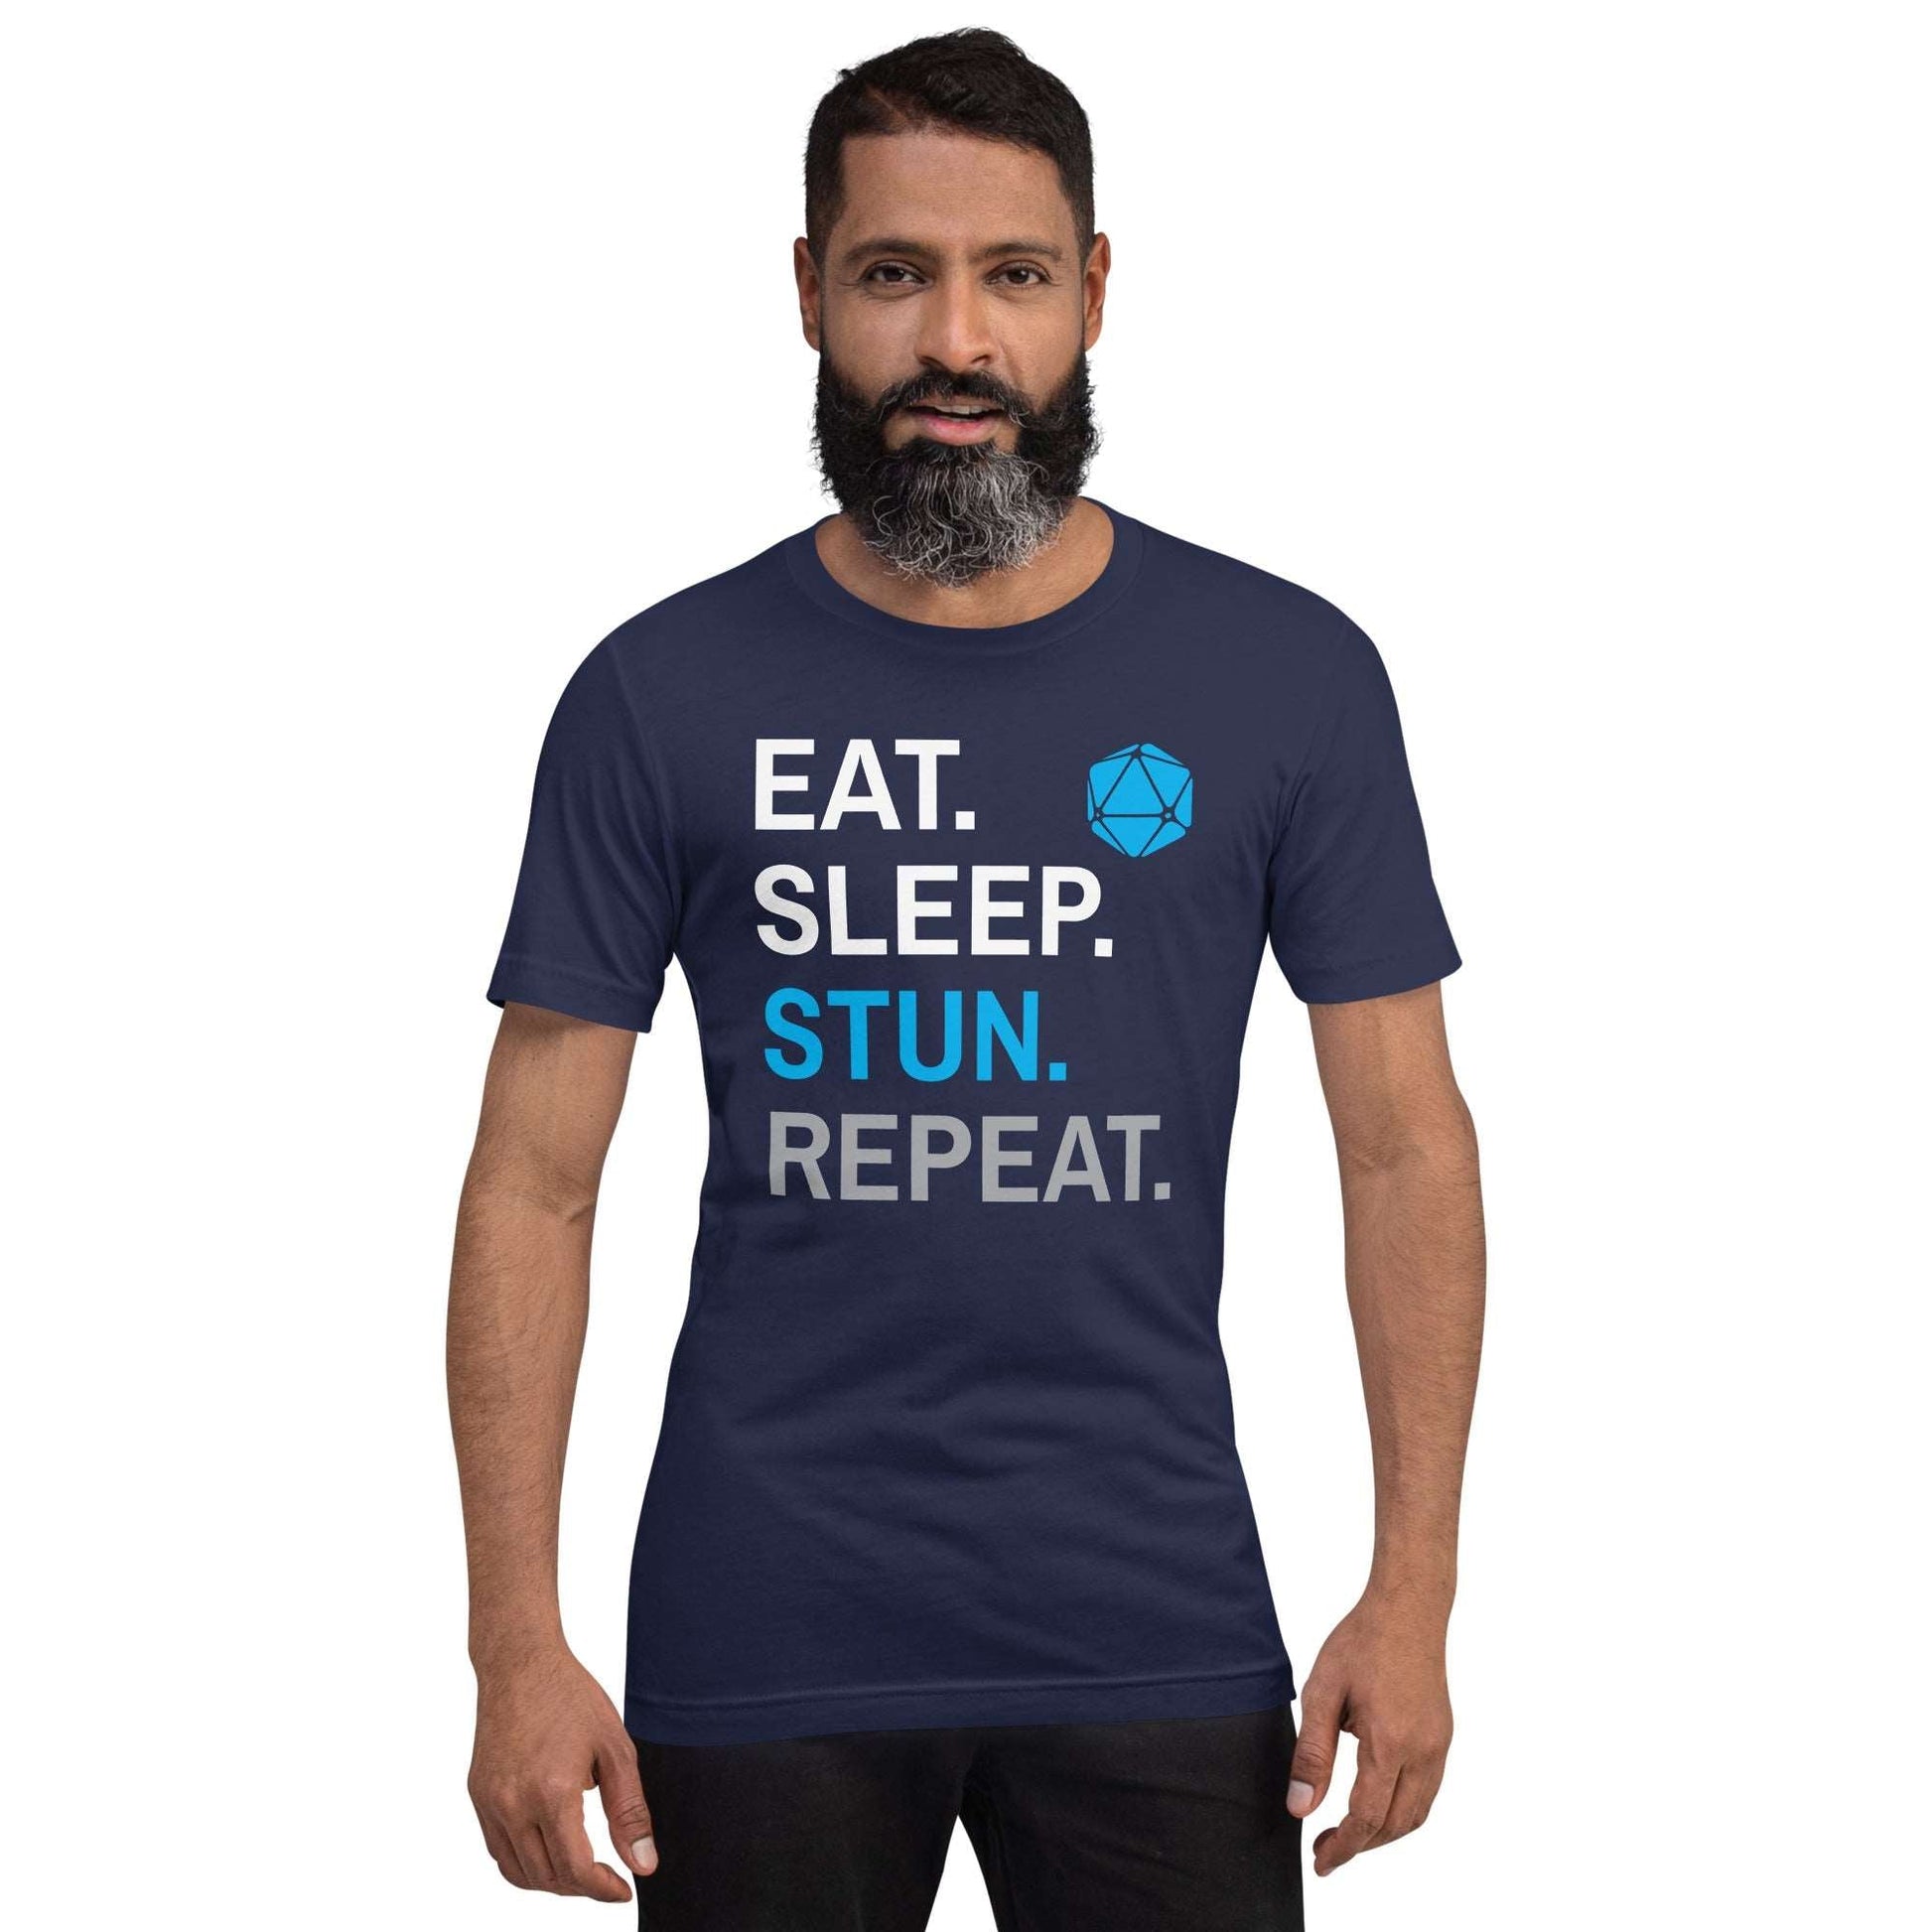 Monk Class T-Shirt – 'Eat, Sleep, Stun, Repeat' – Dungeons & Dragons Monk Apparel T-Shirt